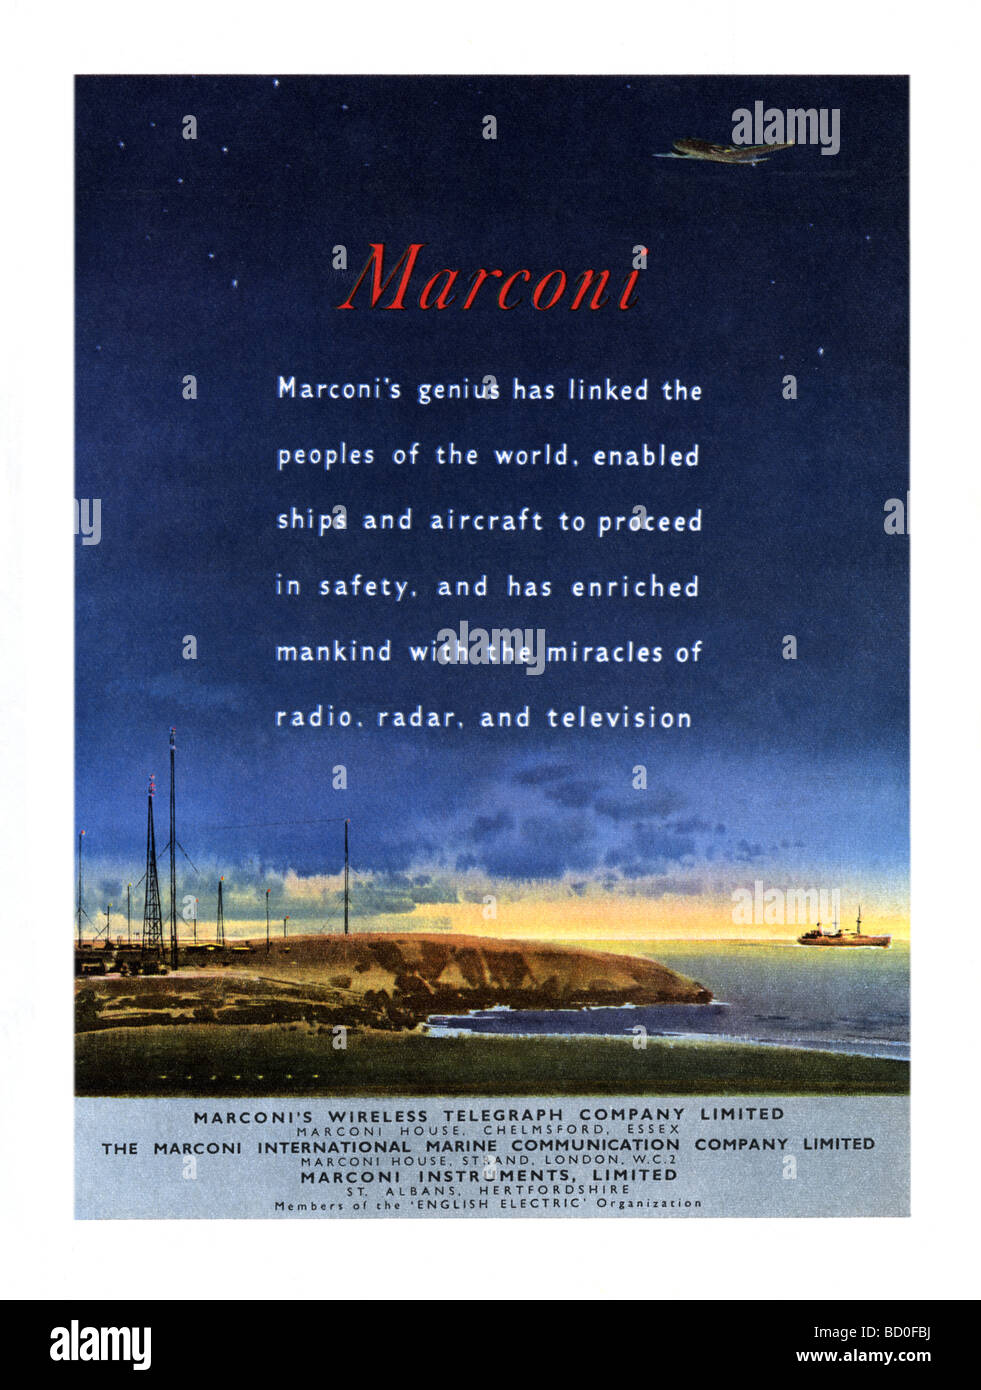 1951 Anuncio para Marconi instrumentos de telecomunicación con mástiles de comunicación inalámbrica, un avión y un barco Foto de stock